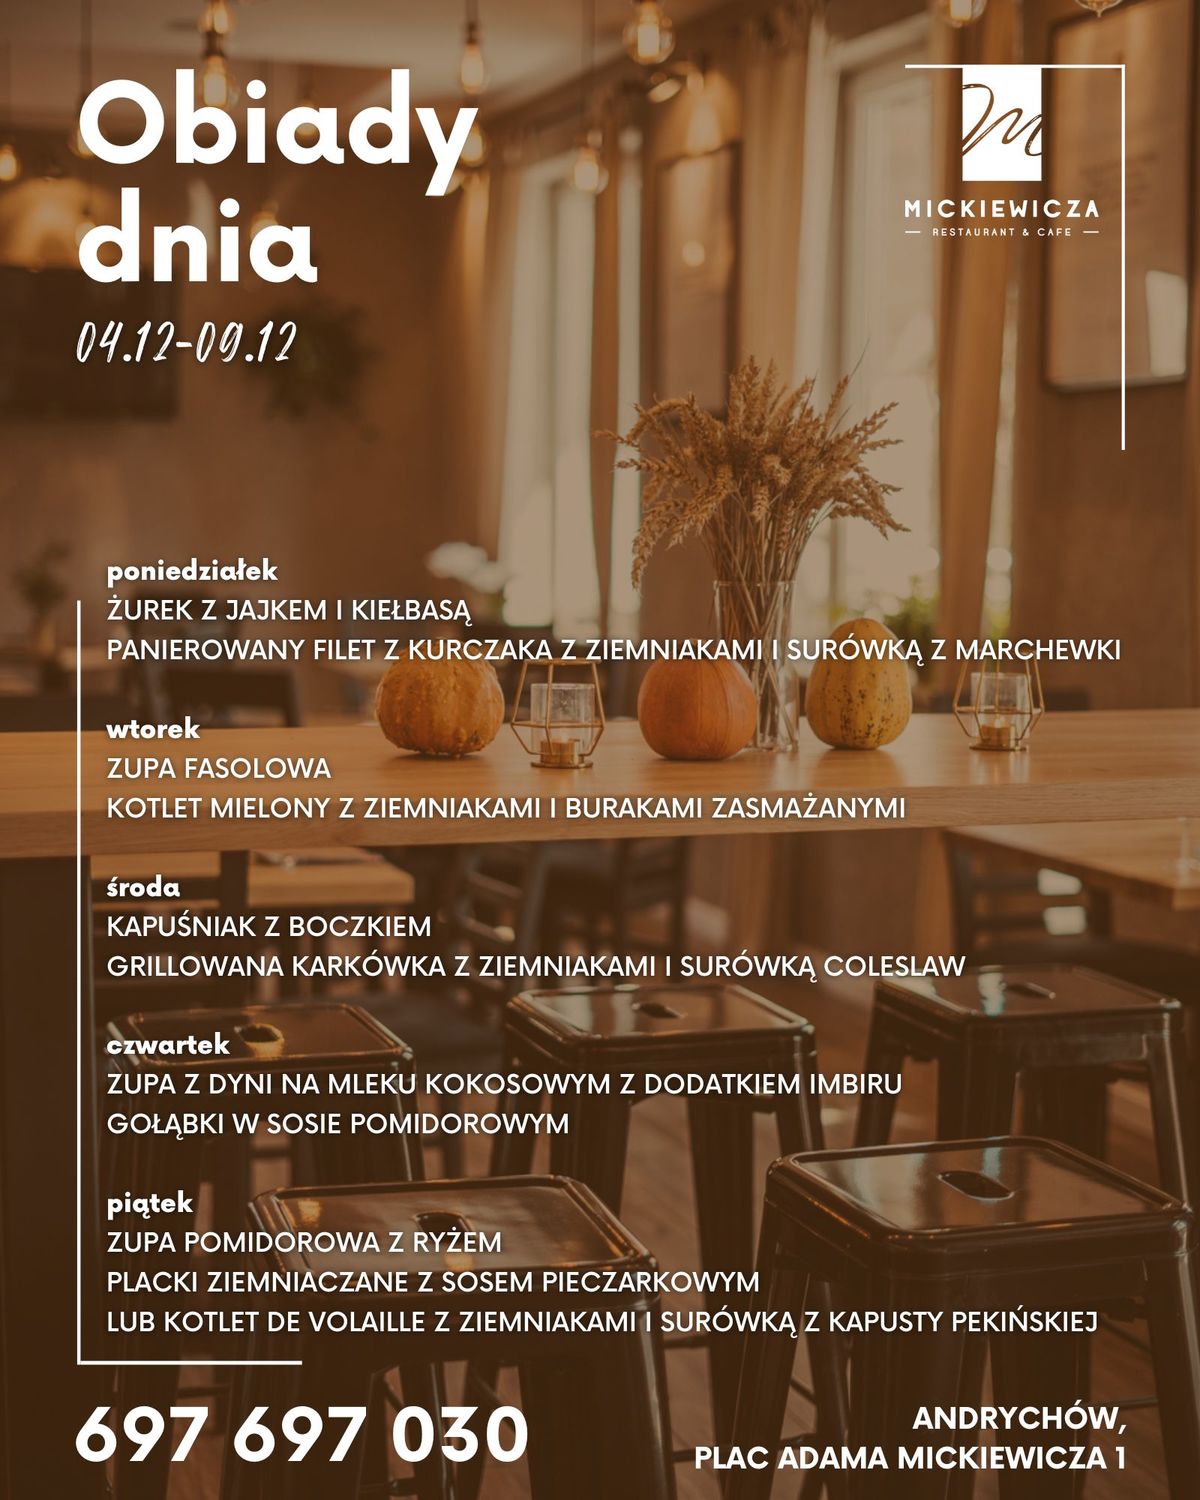 Obiady Dnia w restauracji Mickiewicza w Andrychowie. 5-9 grudnia